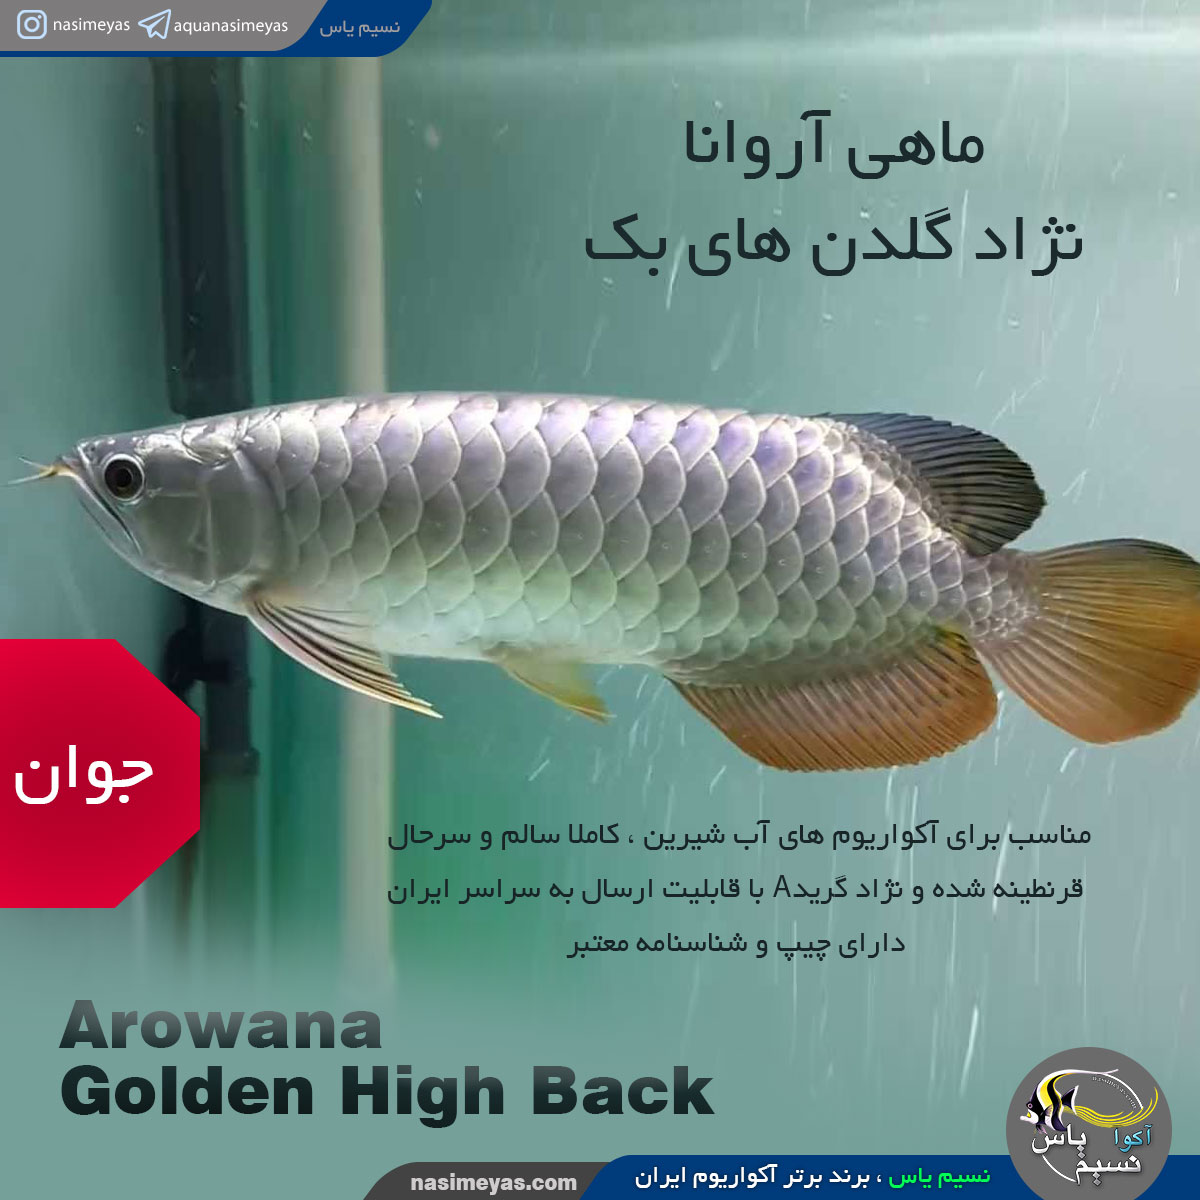 ماهی آروانا گلدن های بک شناسنامه دار golden high back